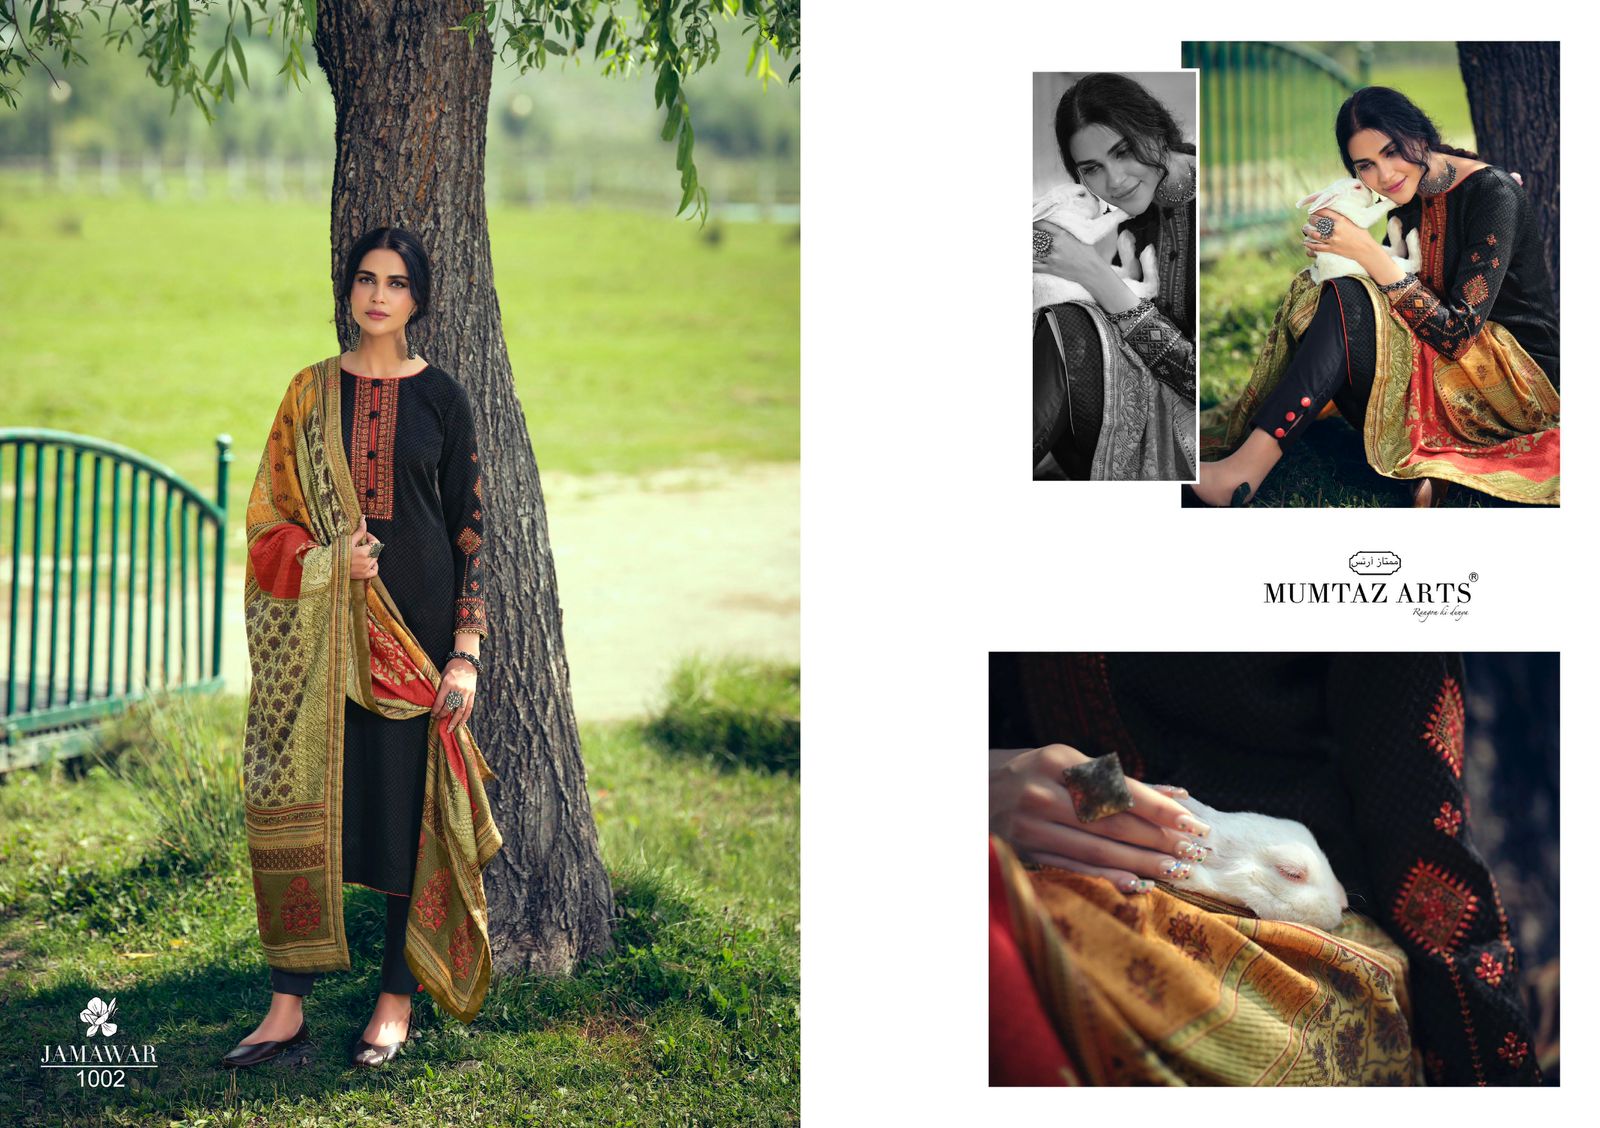 mumtaz art jamawar pashmina exclusive print salwar suit catalog